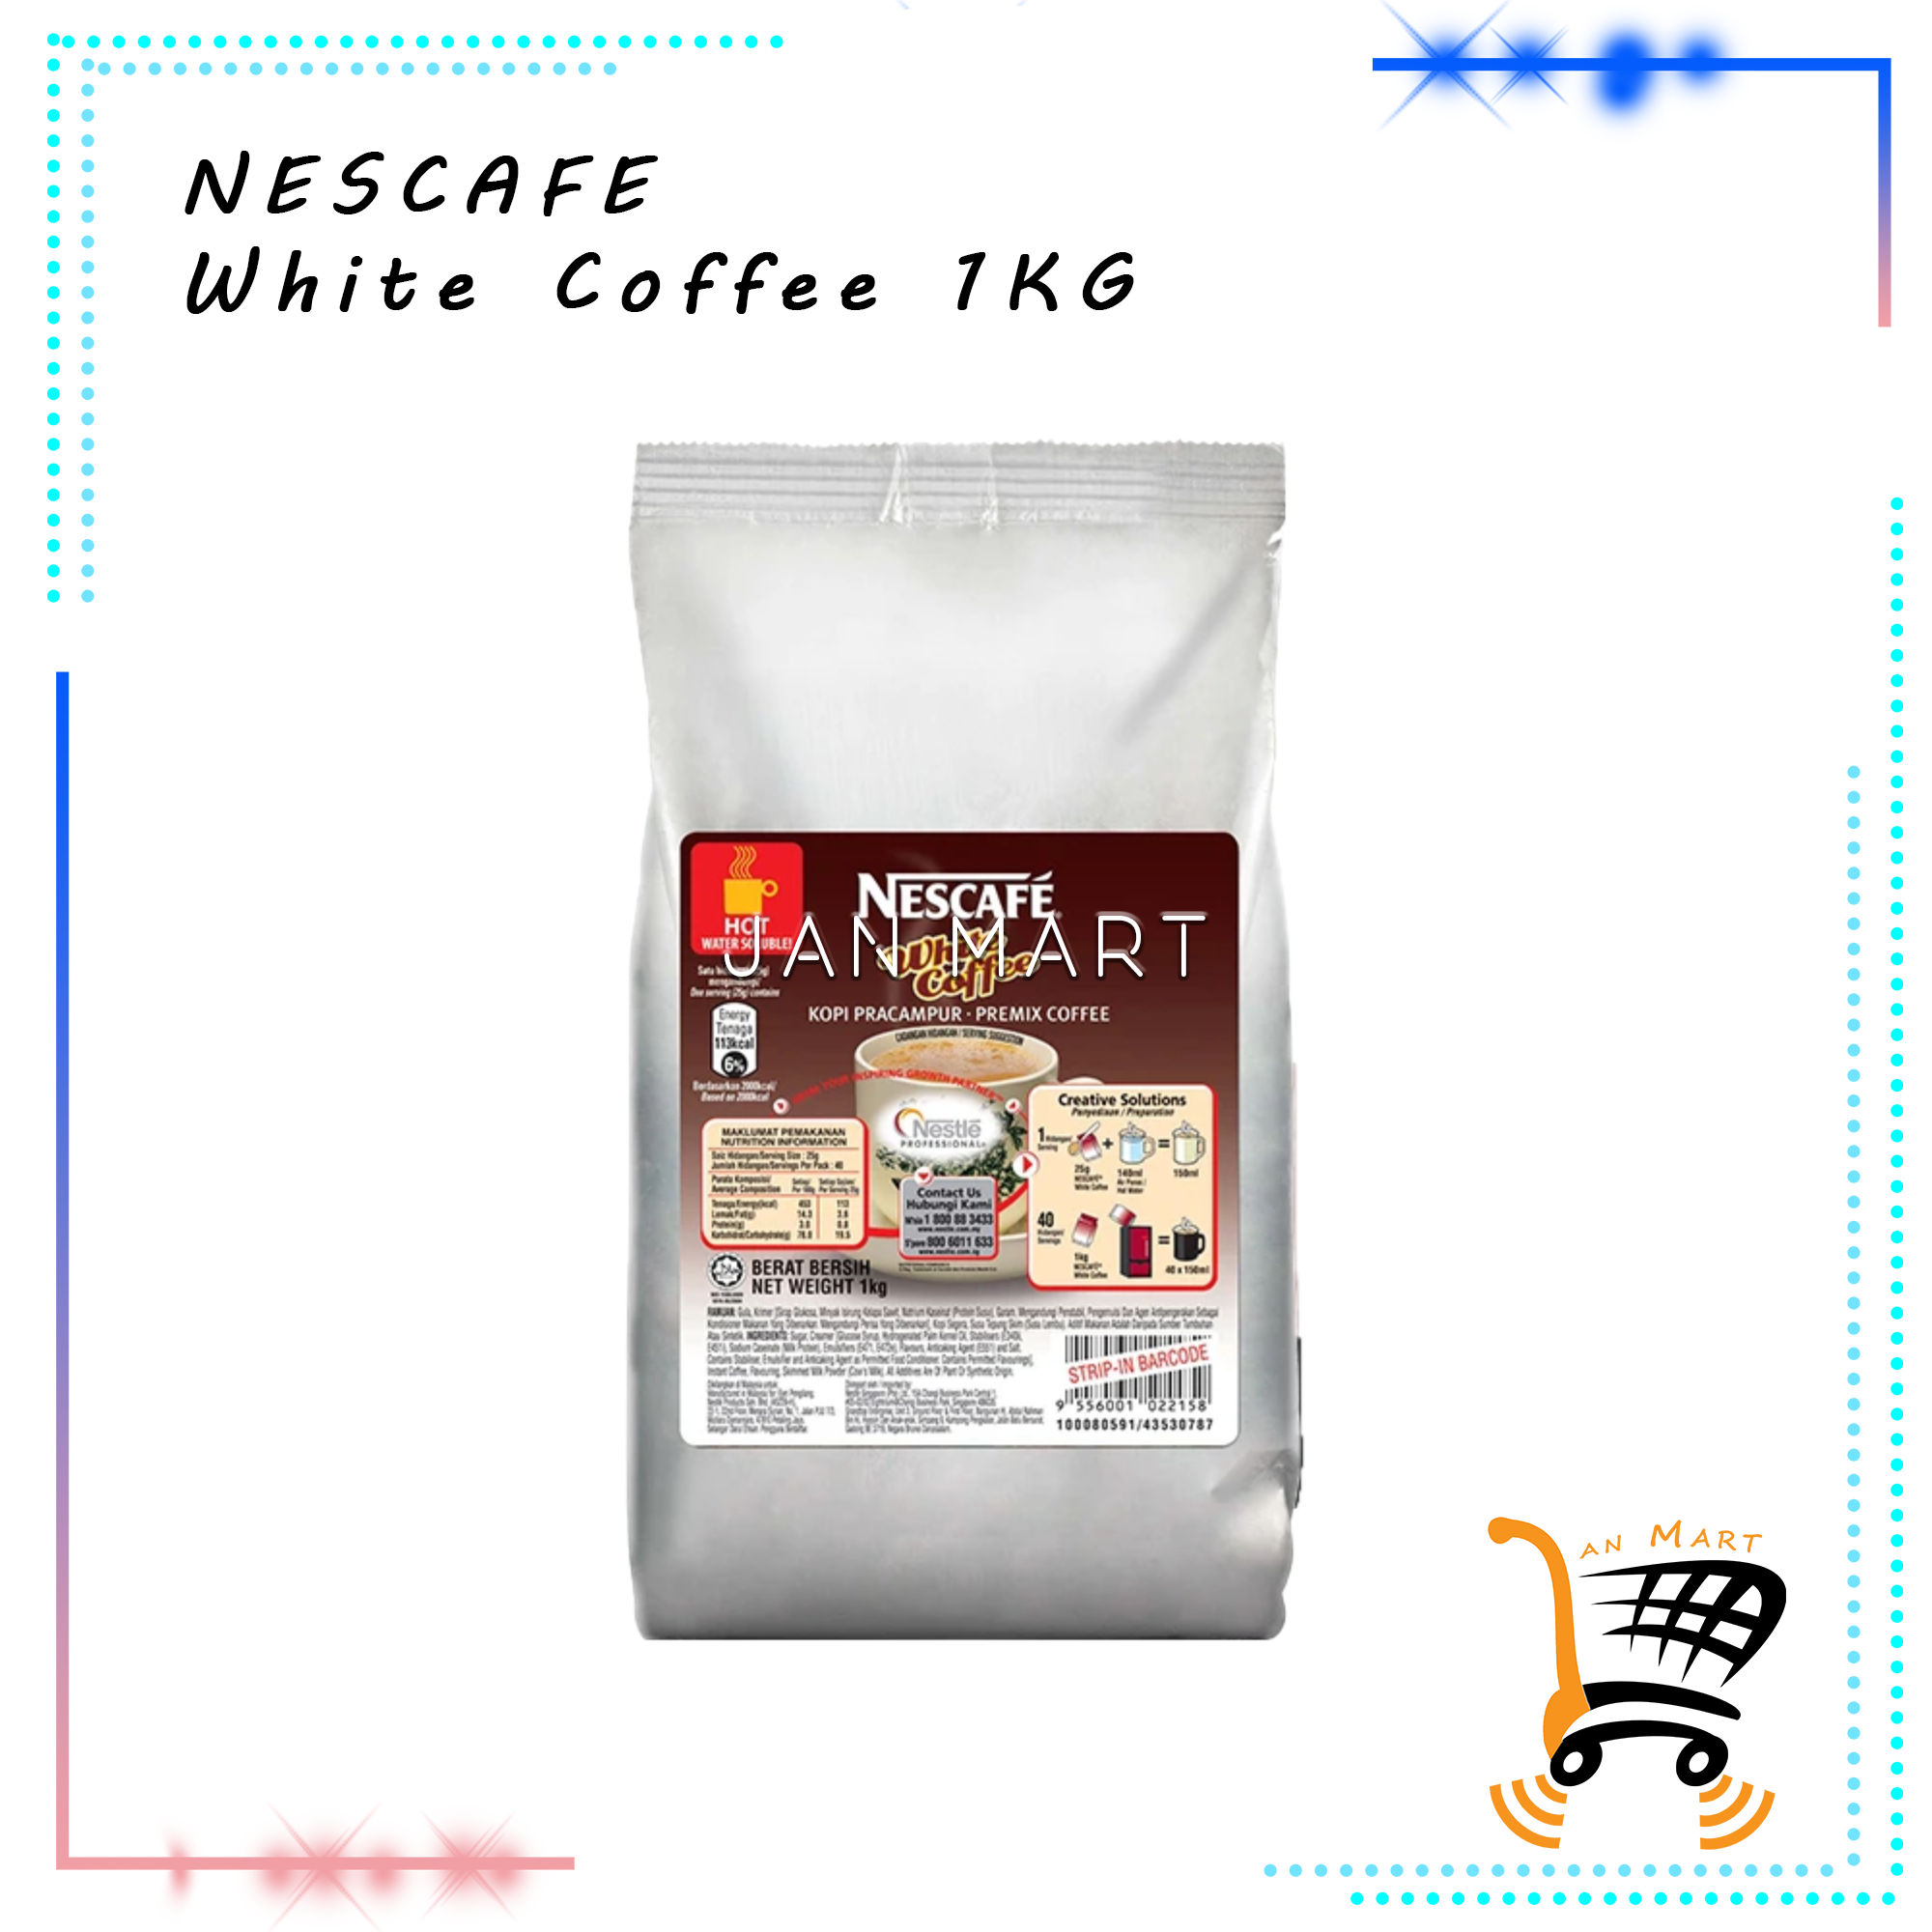 NESCAFE White Coffee 1KG